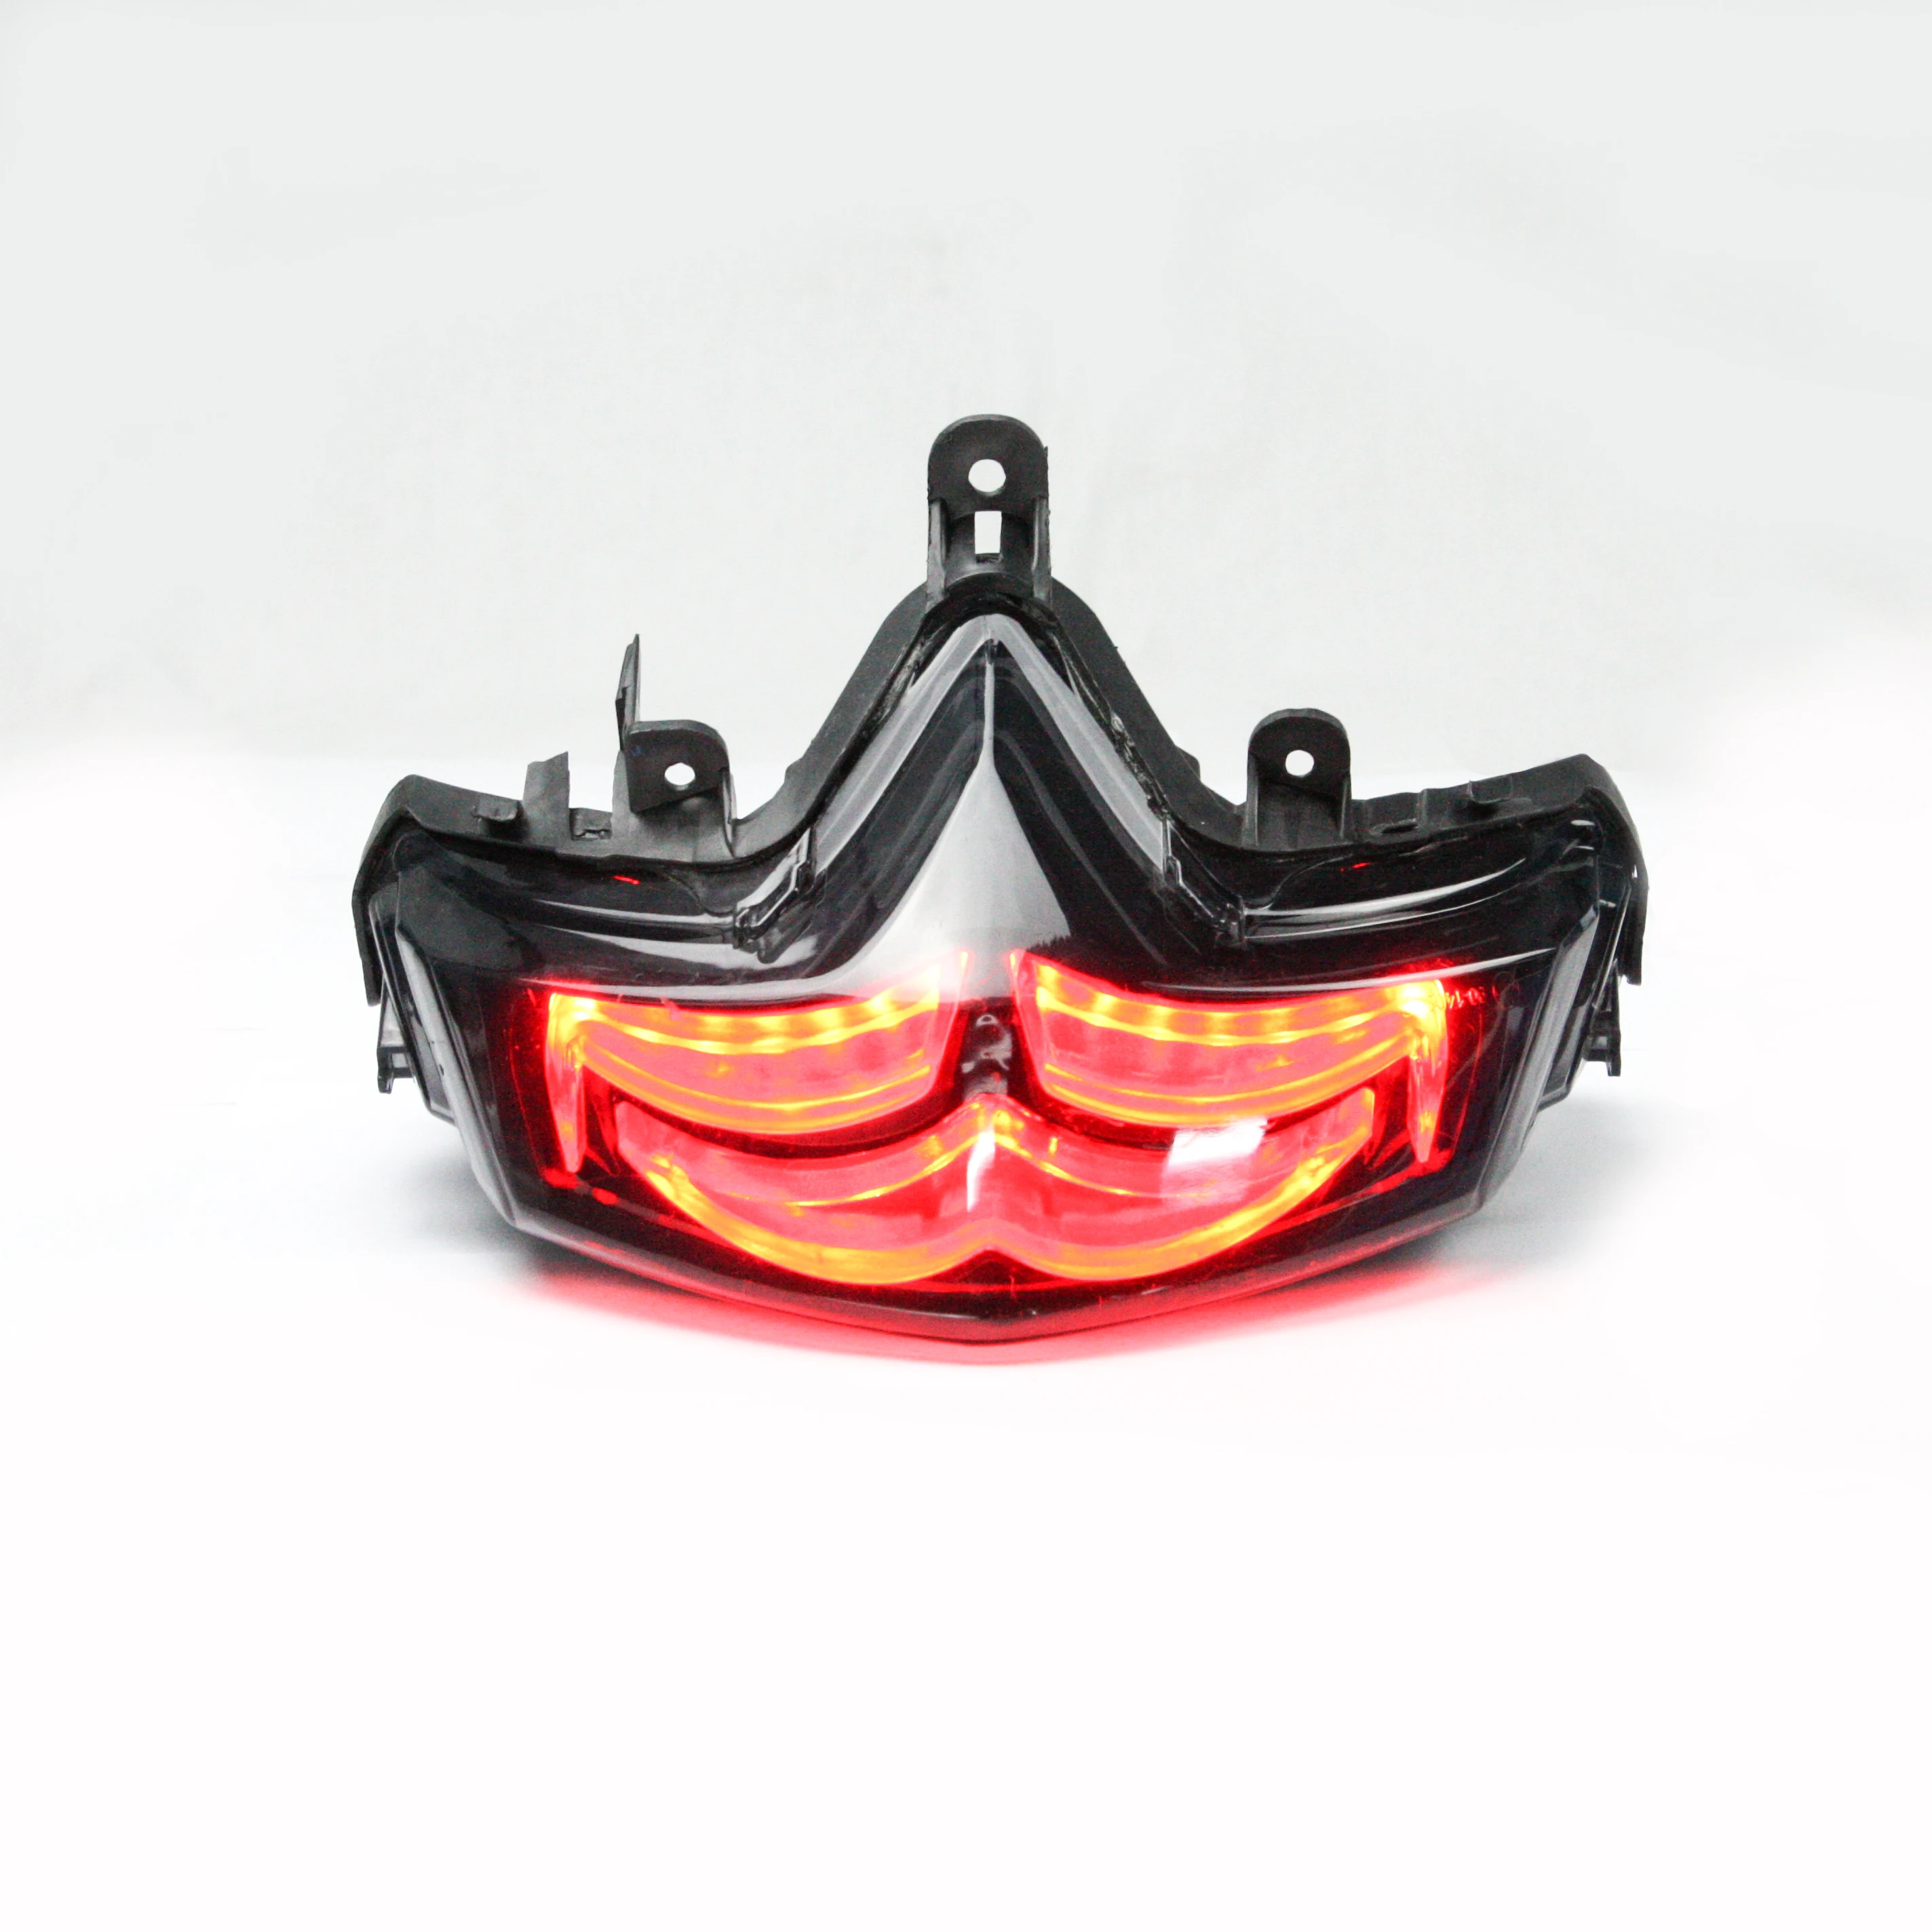 90-1402 для smax 155, светодиодный задний фонарь для мотоцикла, проекторное освещение, скрытое с объективом проектора 